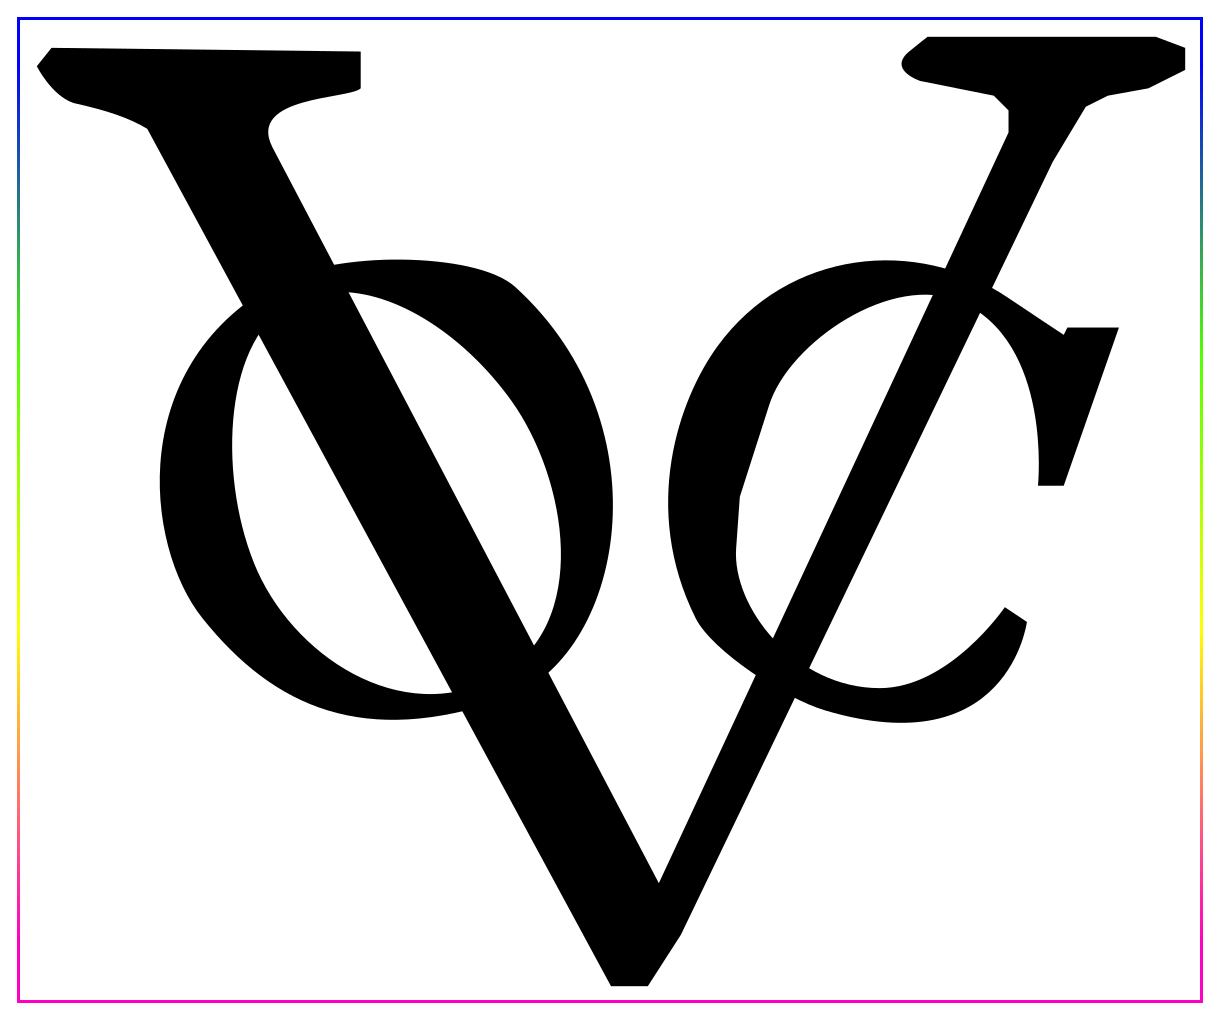 Логотип голландской Ост-Индской компании VOC